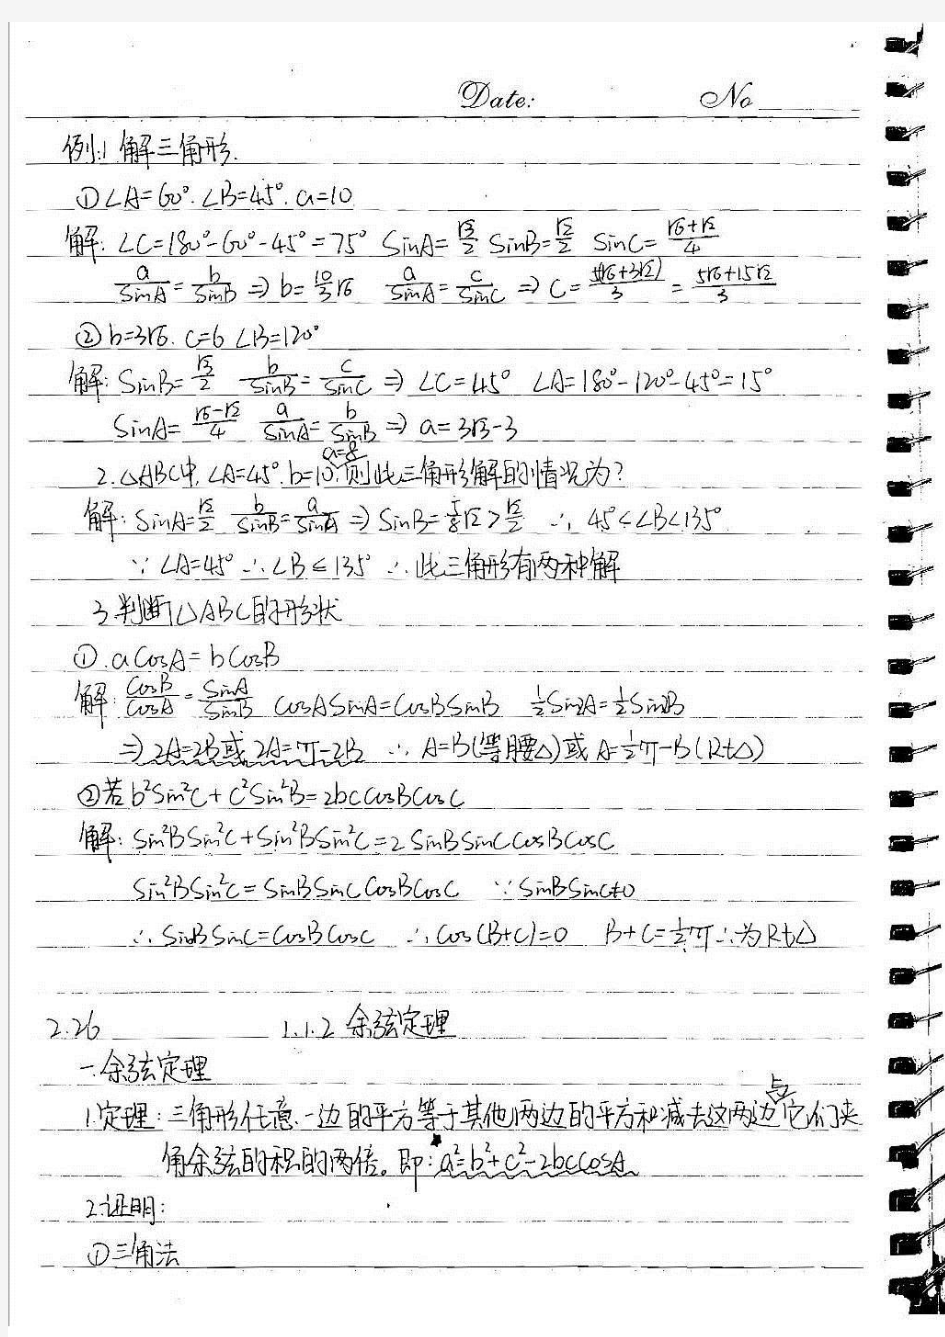 【北京高考状元笔记】人大附中高中部学霸的数学笔记,清晰手写体-模块5部分三角函数共62页